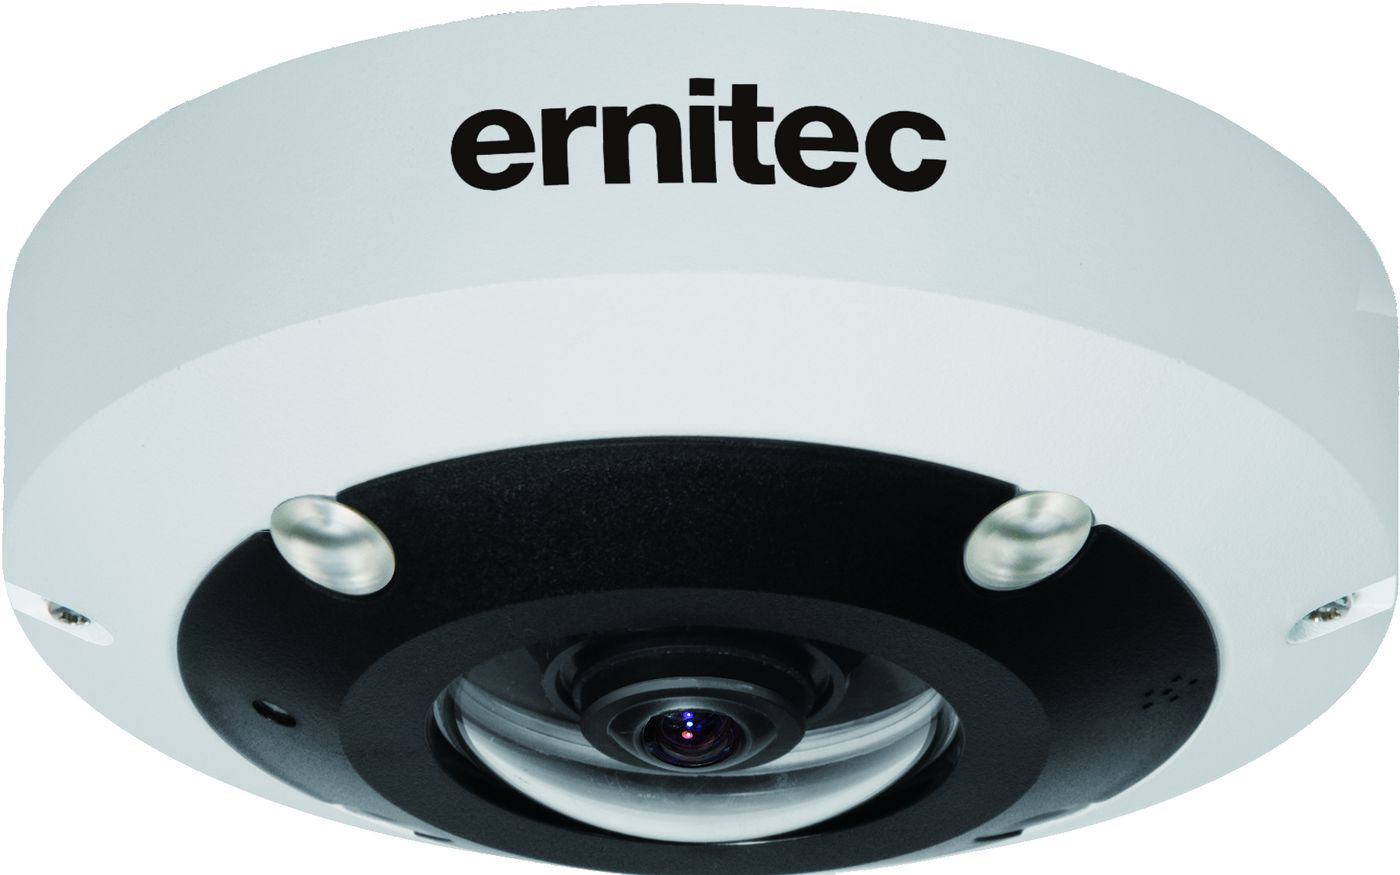 0070-07965 ERNITEC 12MP Fisheye IP Camera